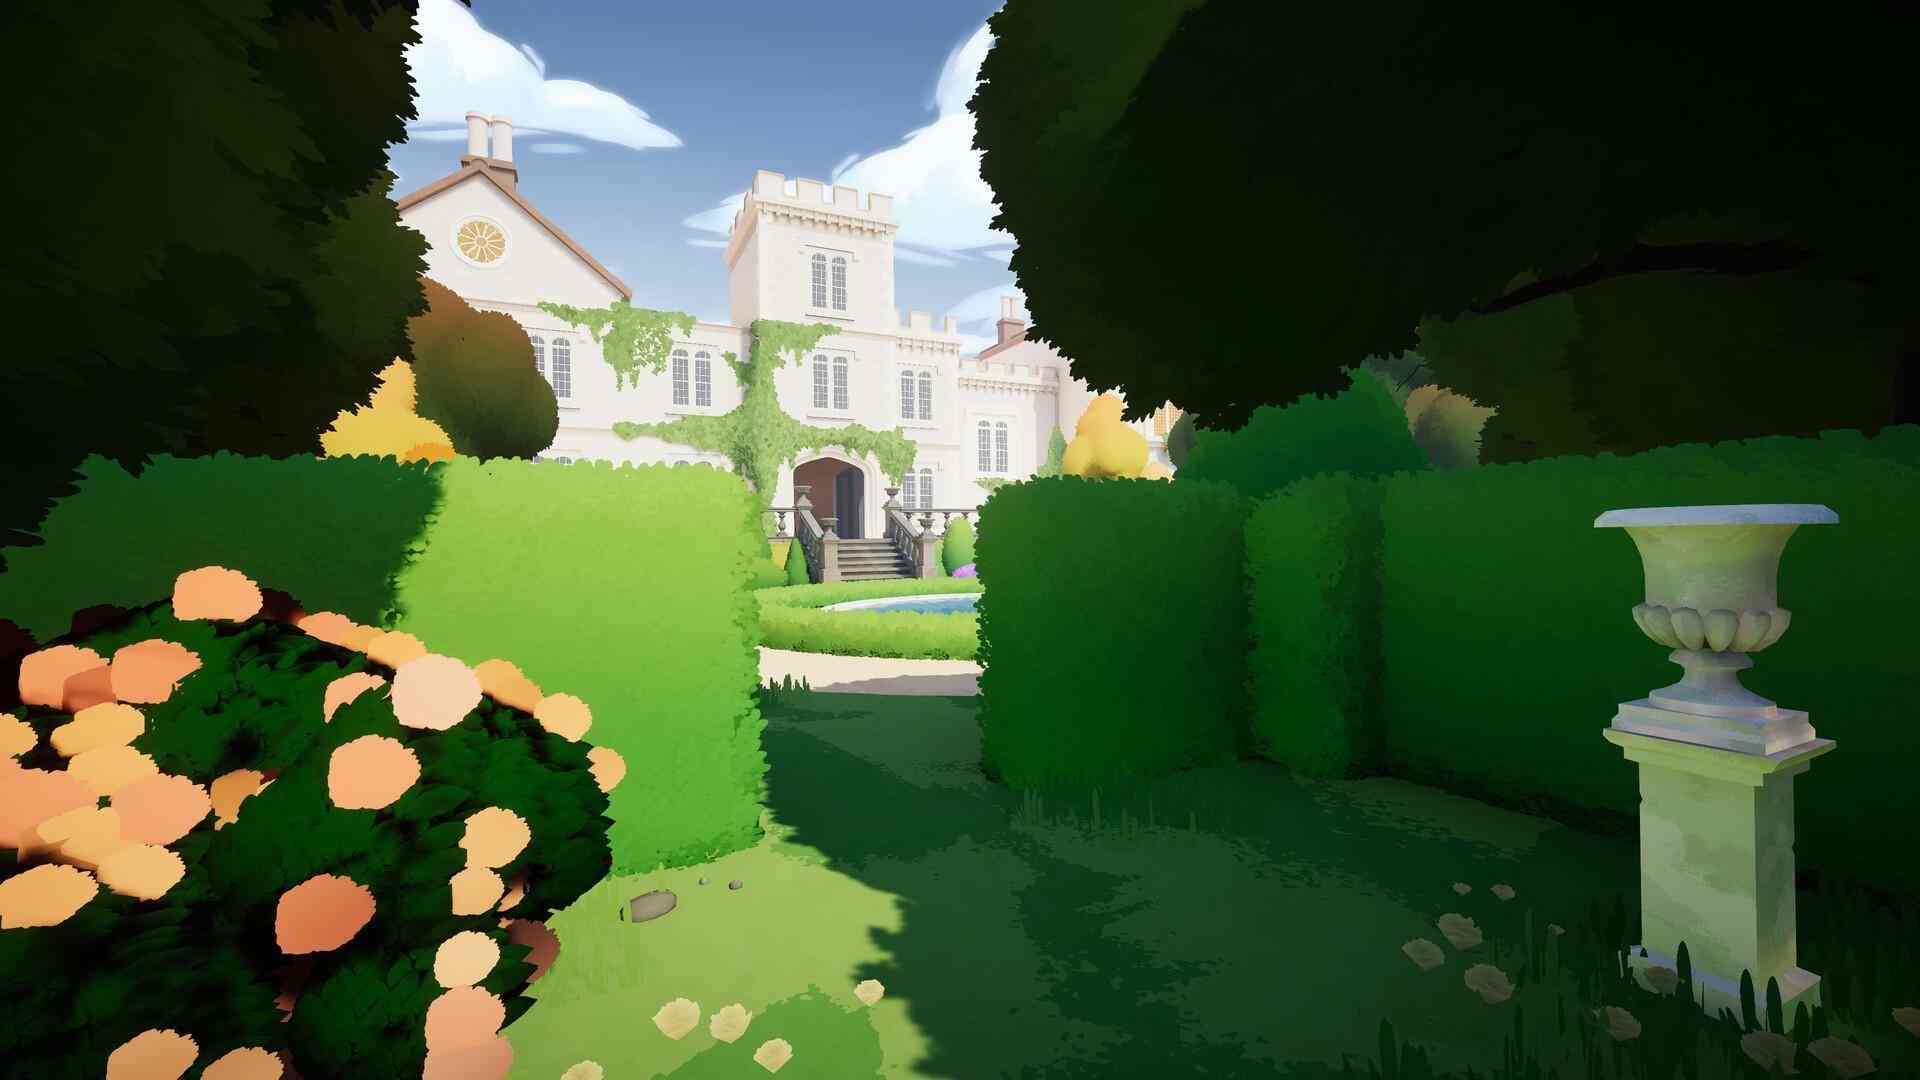 沉浸式模拟教育游戏《植物学庄园》现已在新品节推出试玩Demo